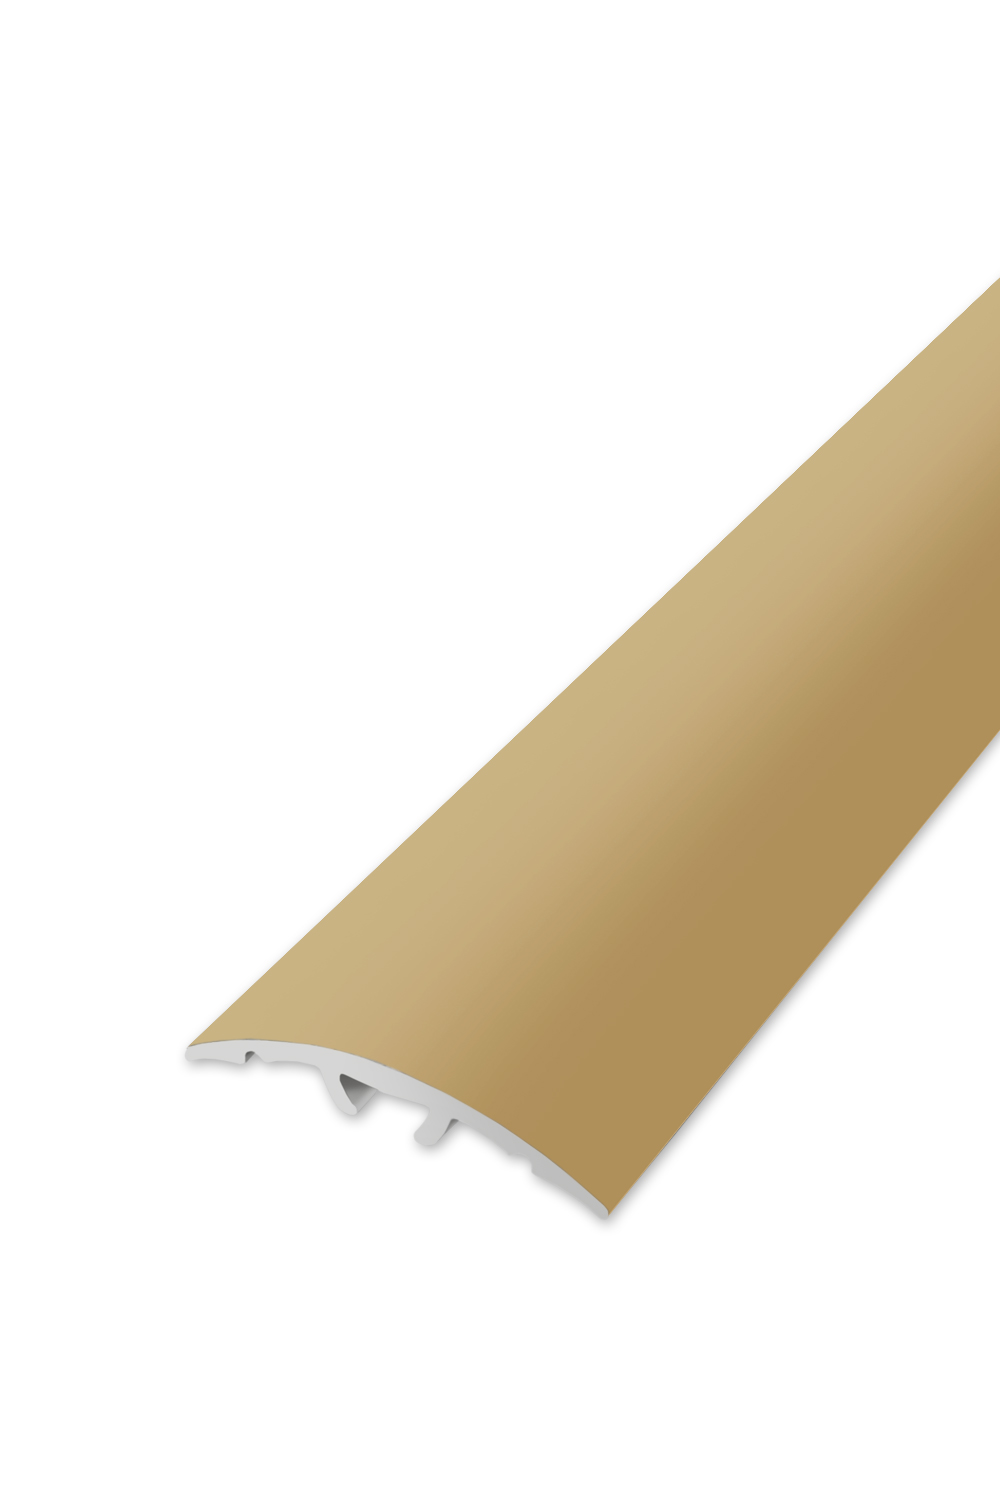 Přechodová lišta WELL 32 - Zlatá 90 cm